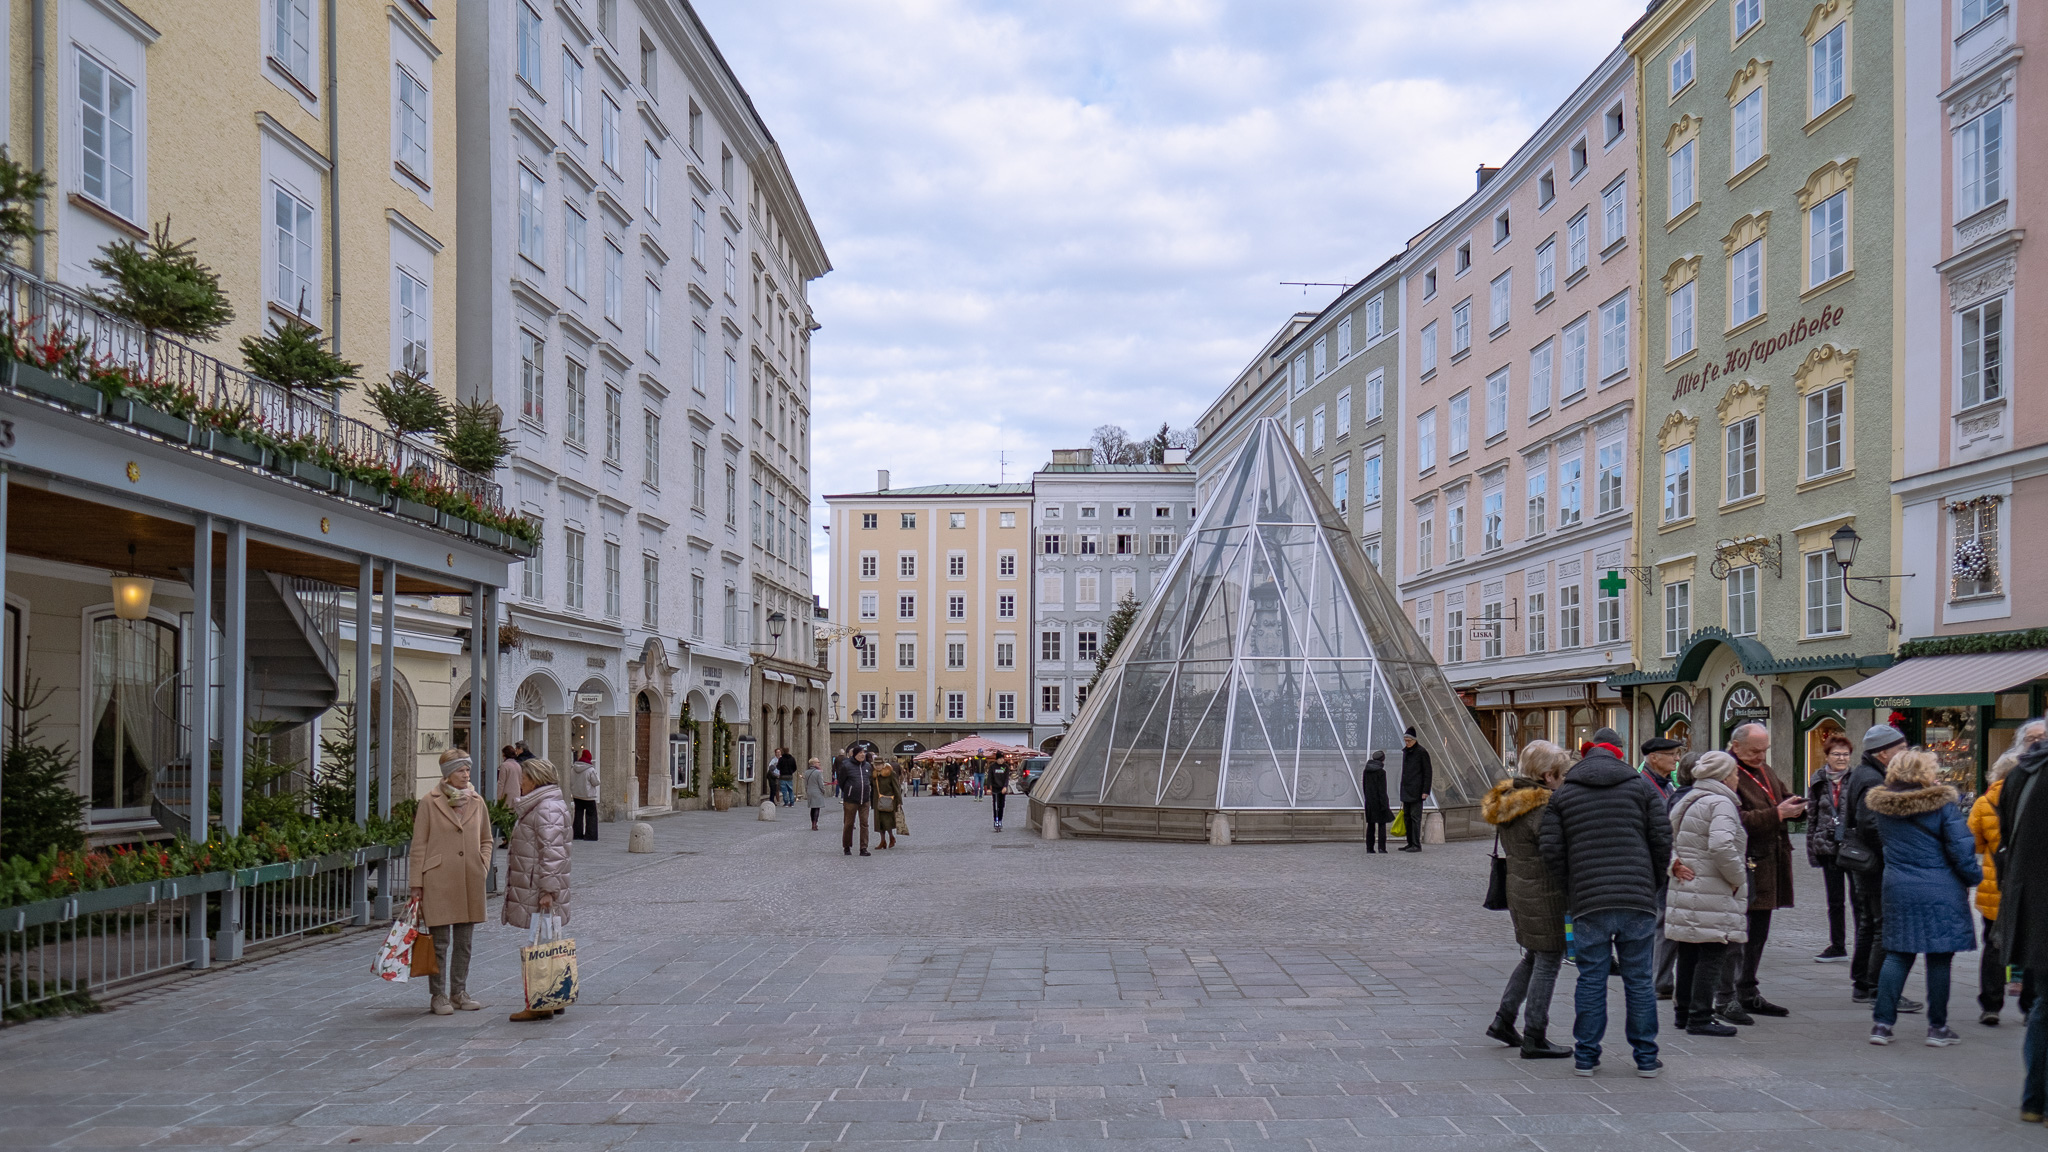 Marktplatz mit barocken Häusern rechts und links, im Vordergrund stehen Menschen, links zwei Frauen sich unterhaltend. In der Mitte des Platzes verhüllt eine gläserne Pyramide einen Springbrunnen.